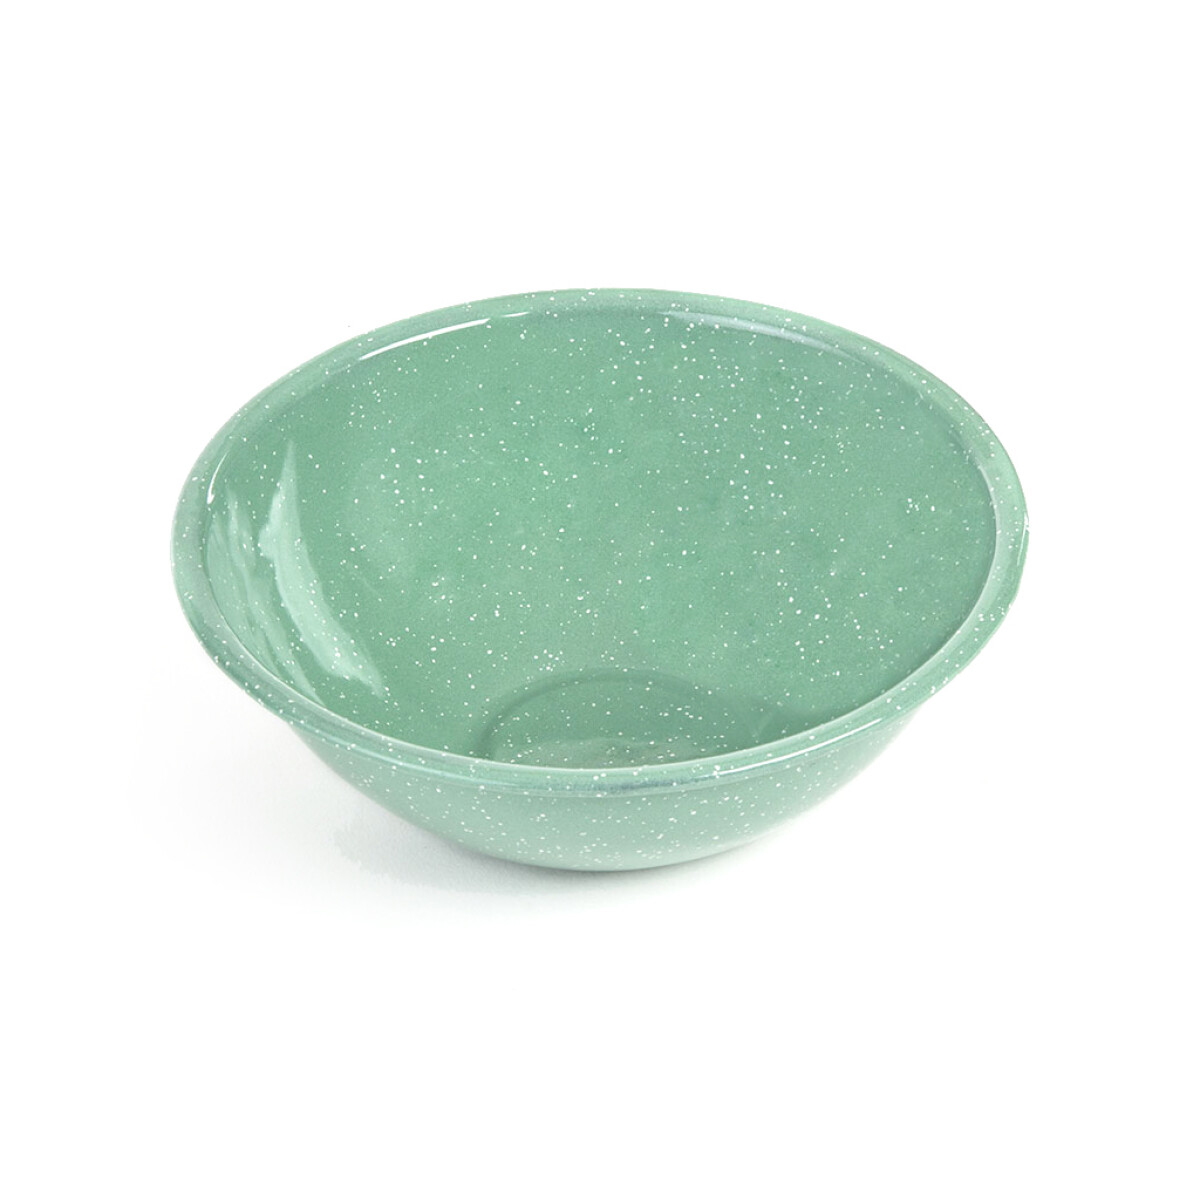 Bowl Acero Esmaltado 500ml Mint 